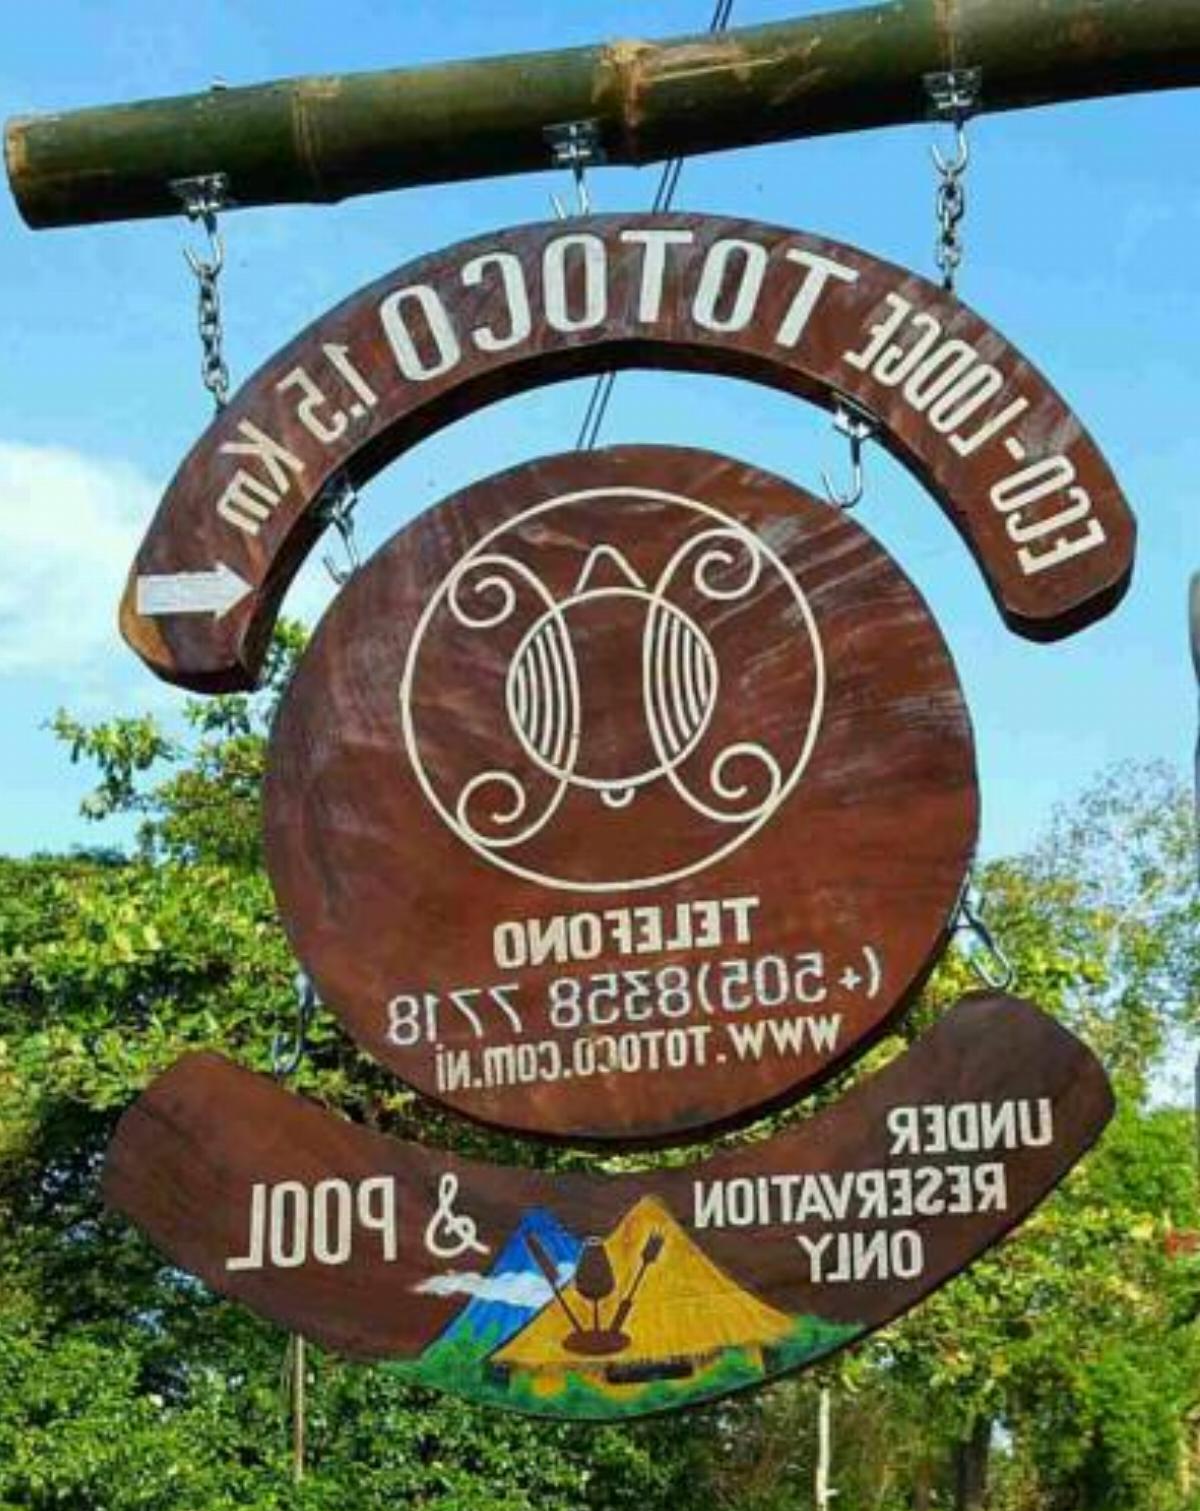 Totoco Eco-lodge